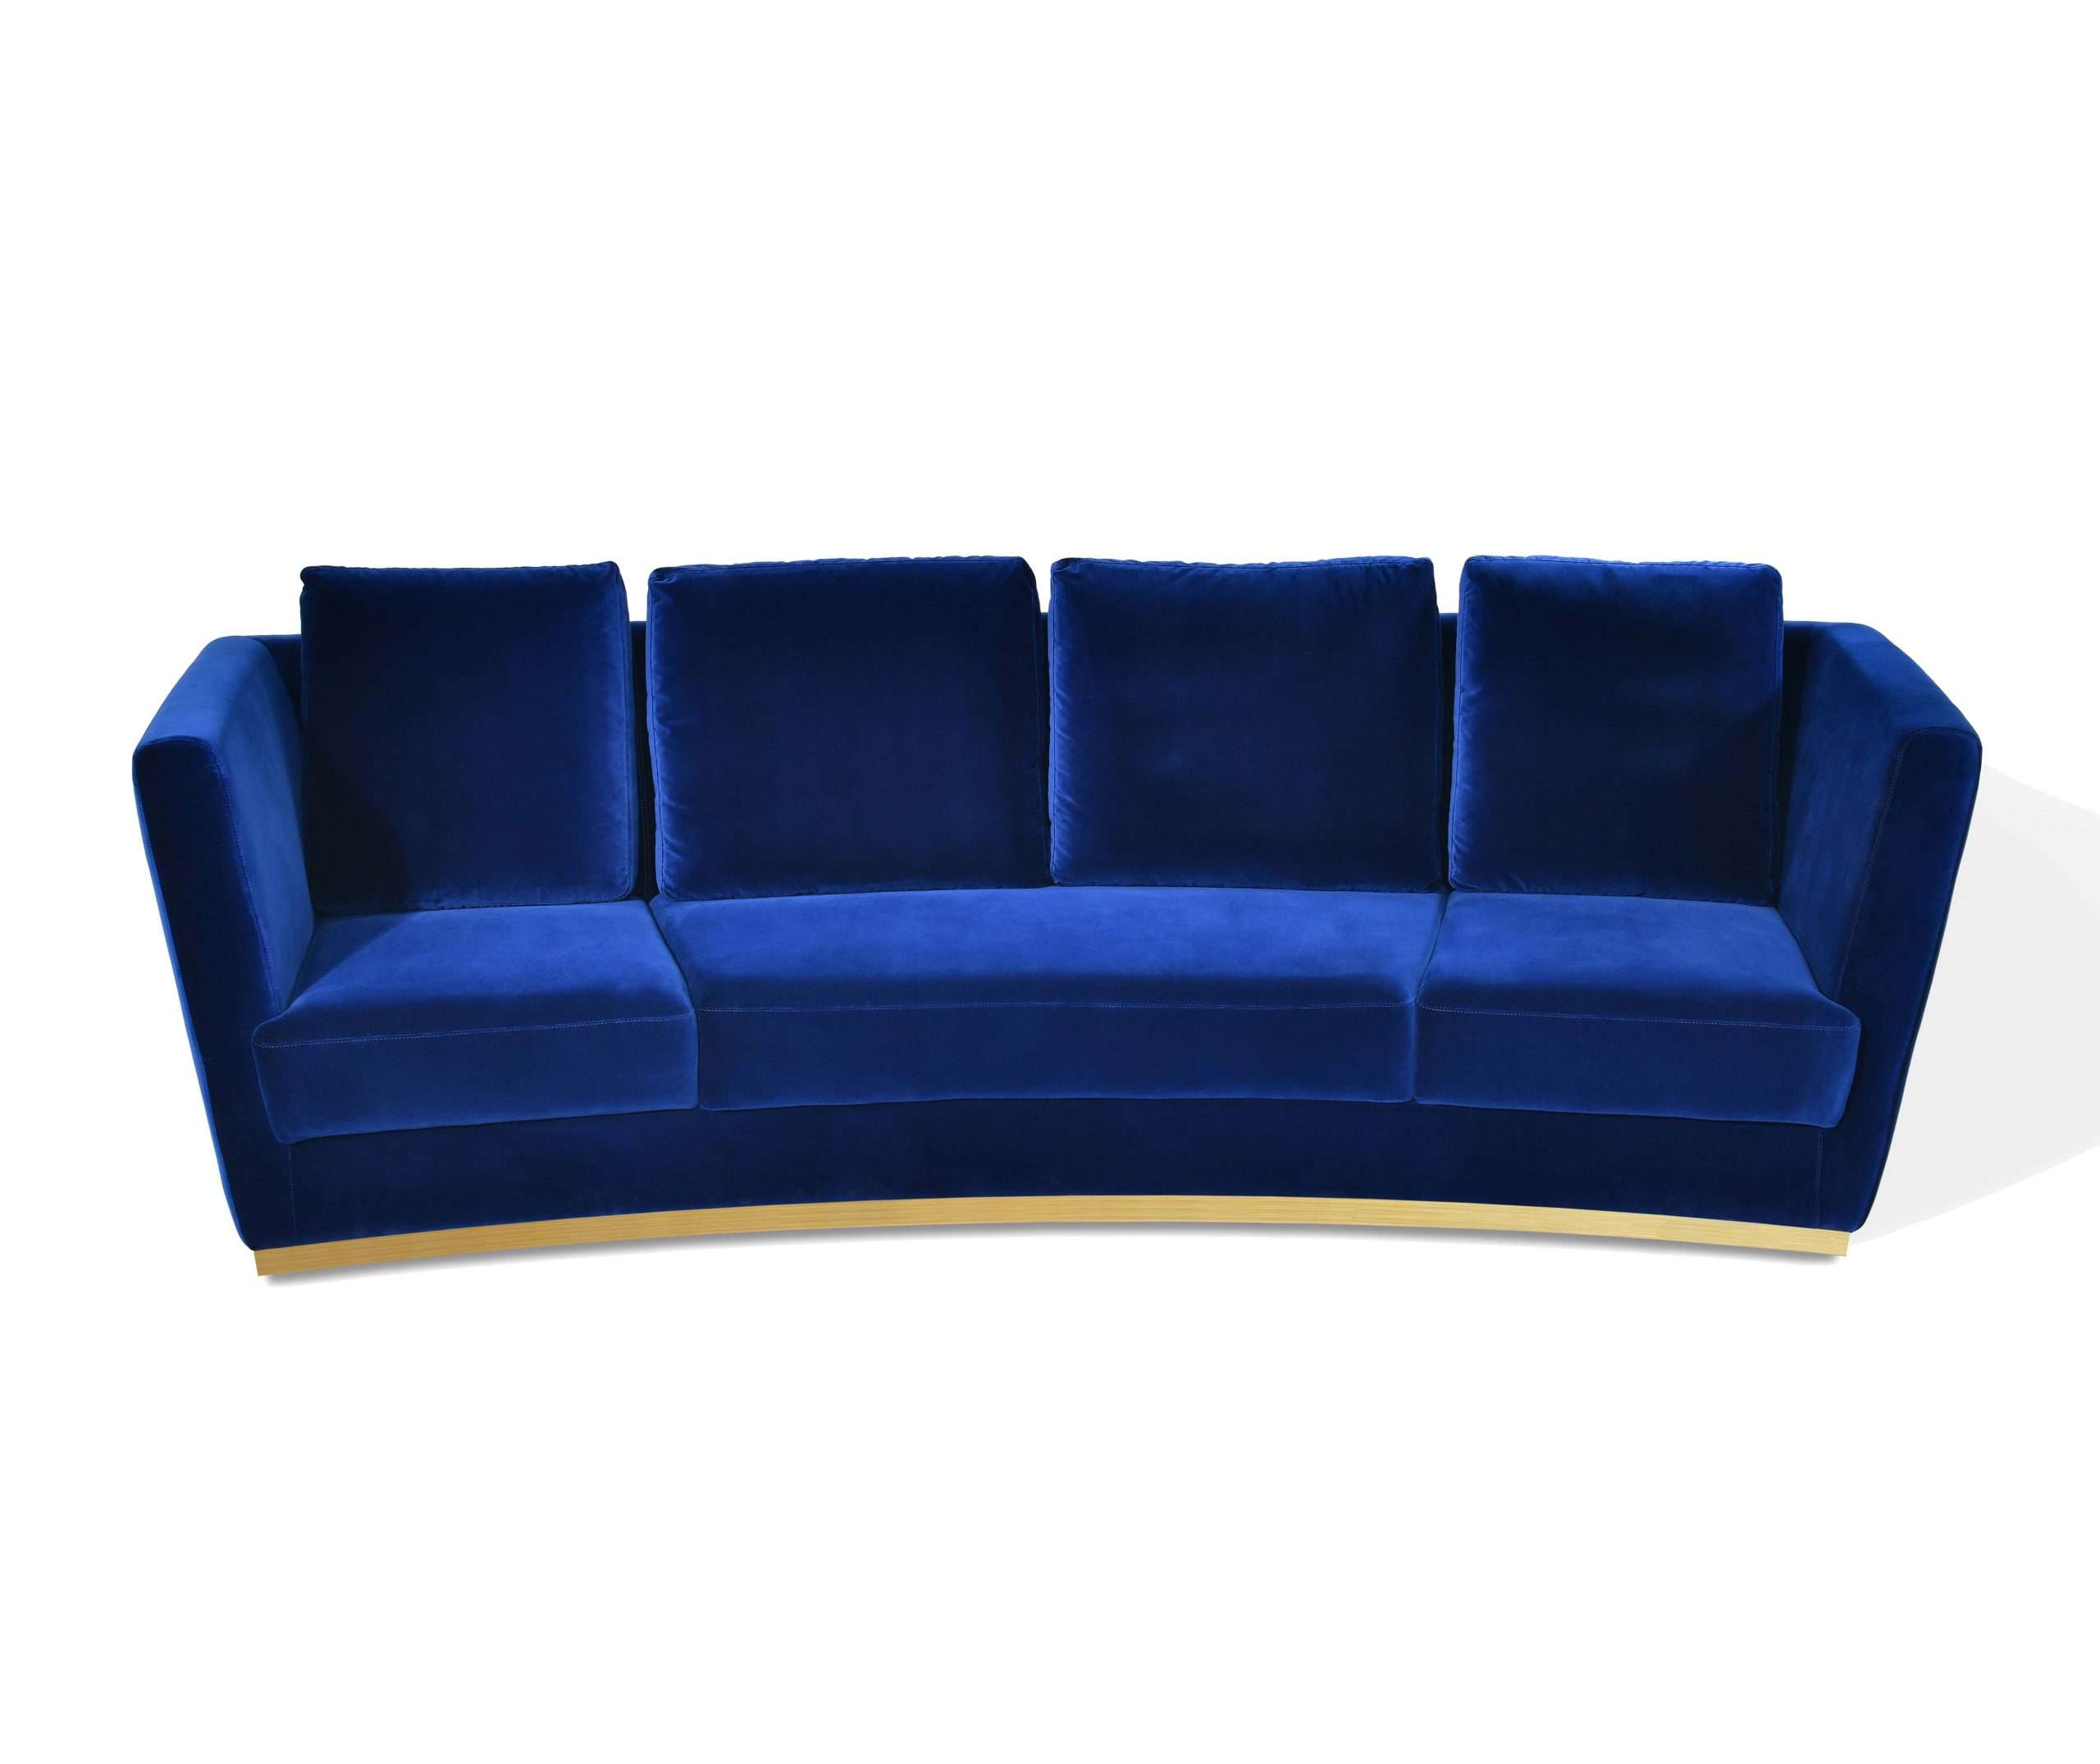 COMPA 3-Seater Sofa